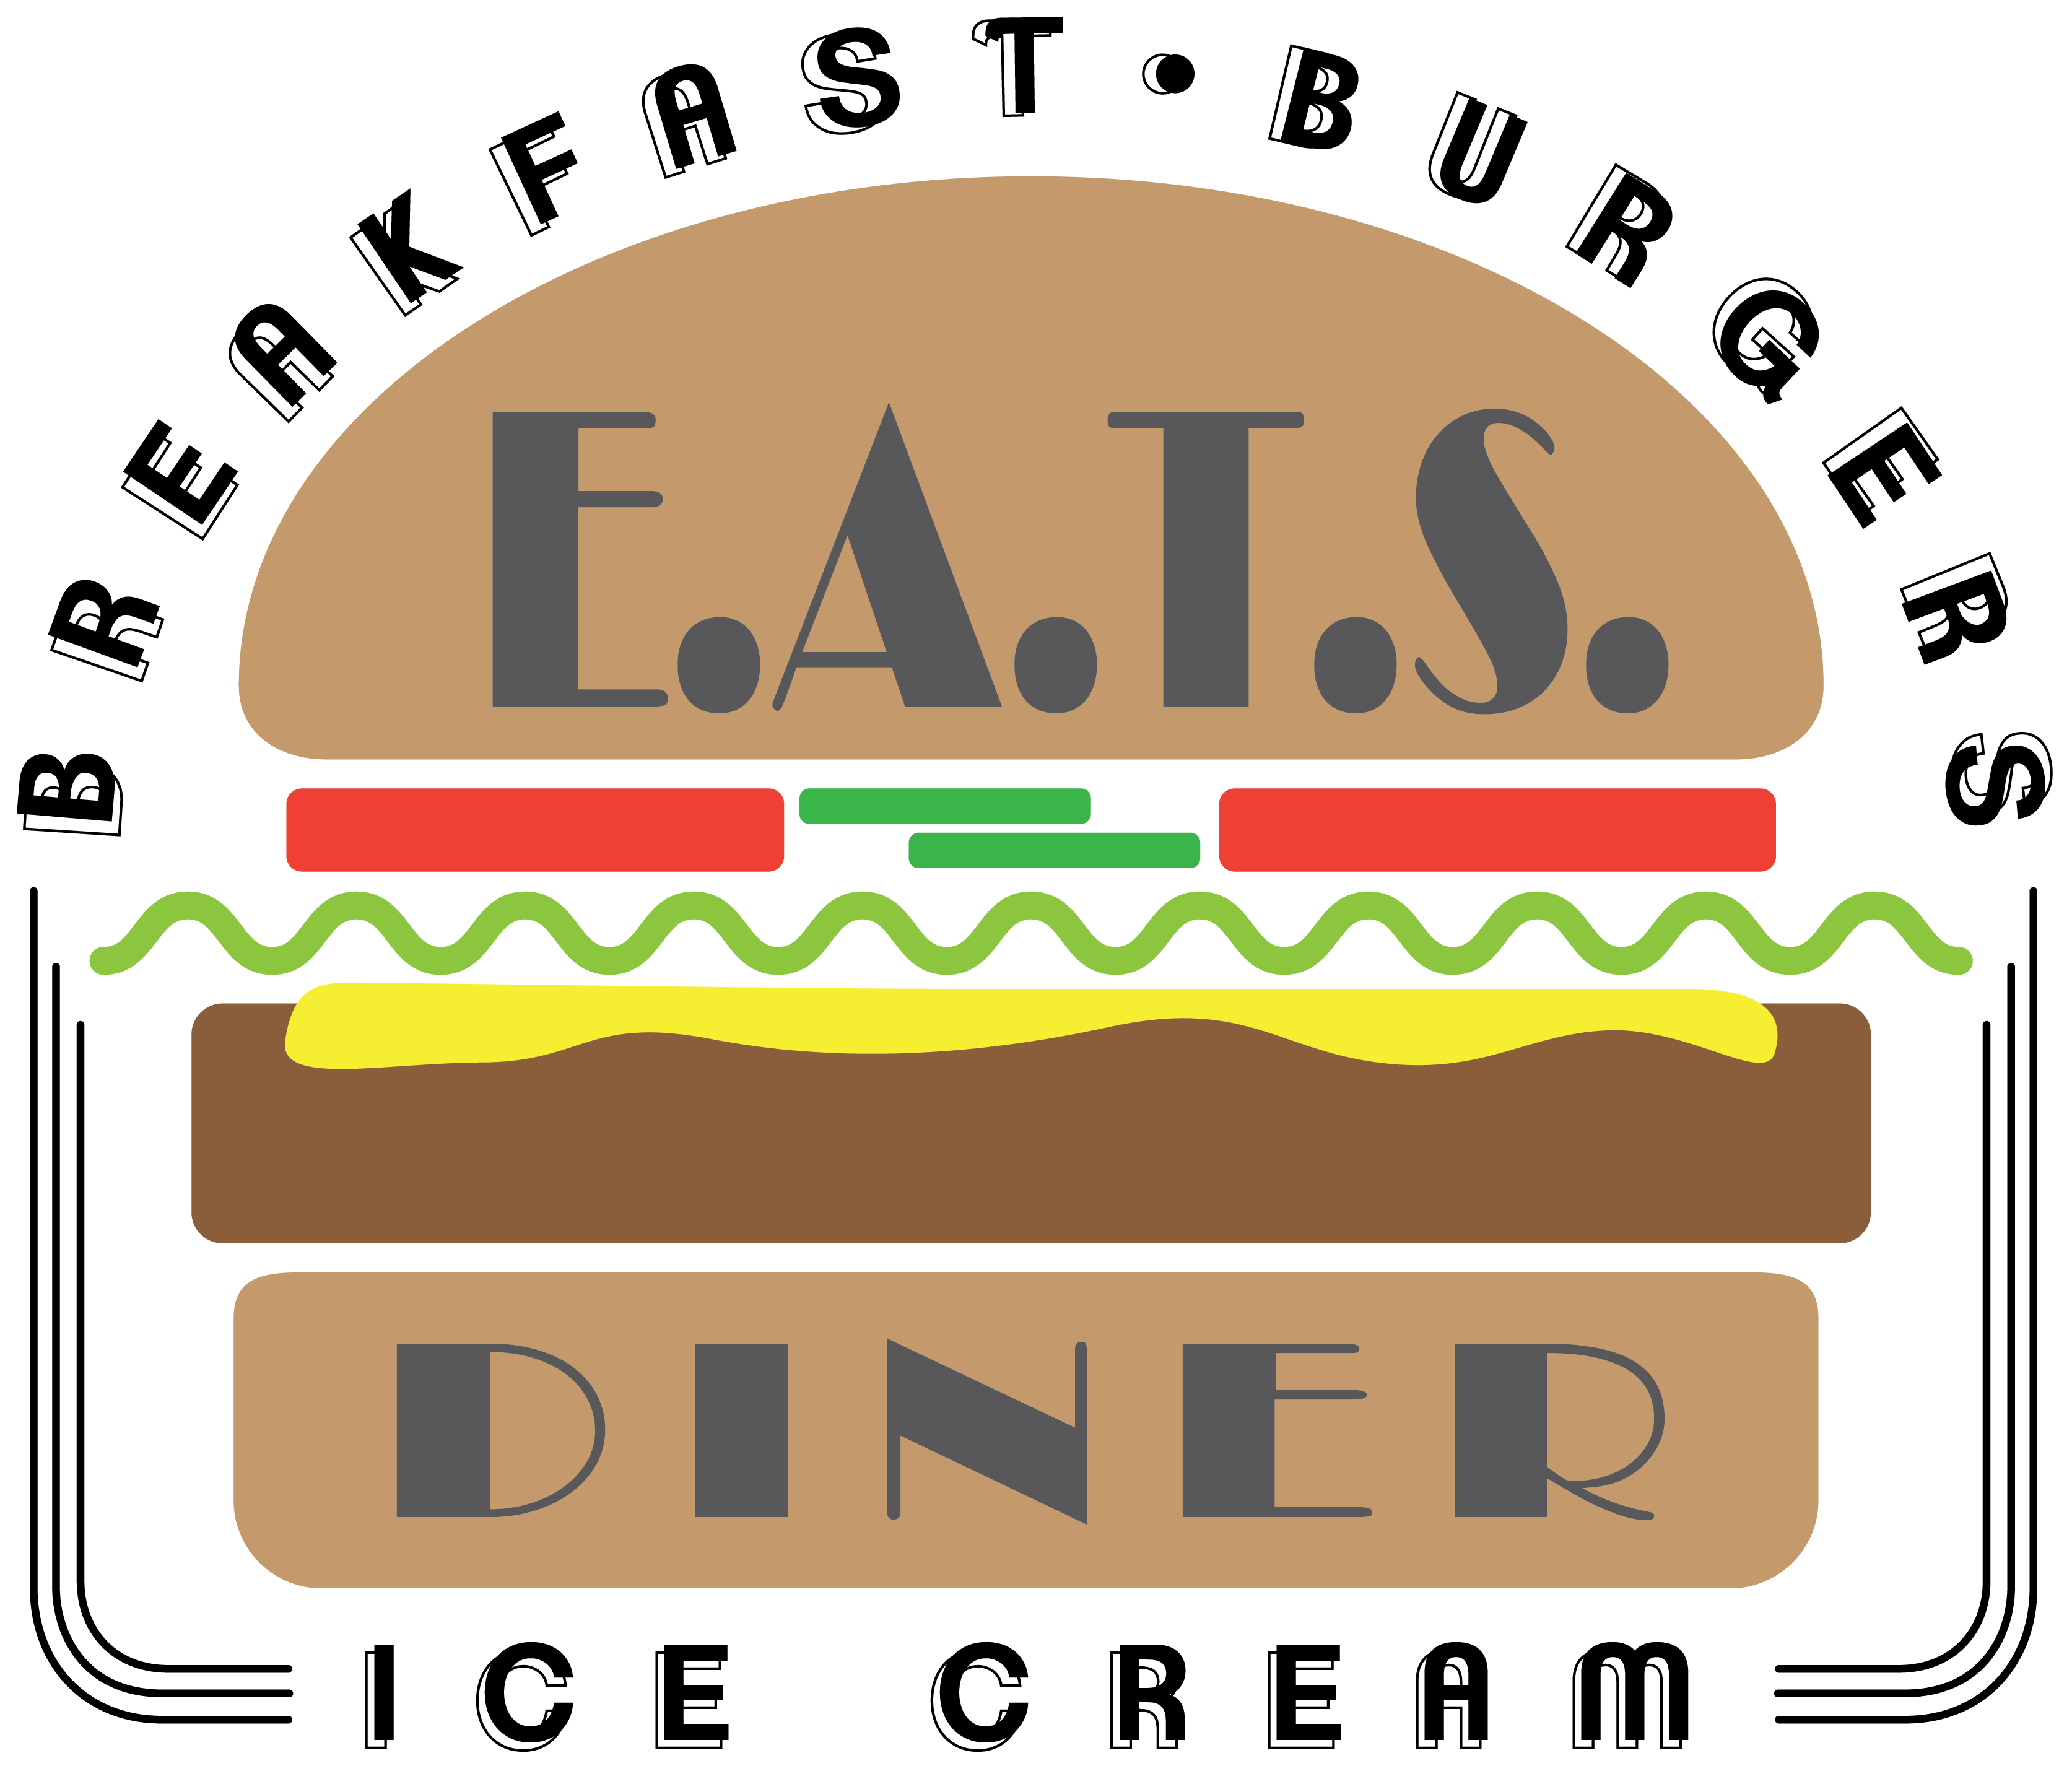 E.A.T.S Diner